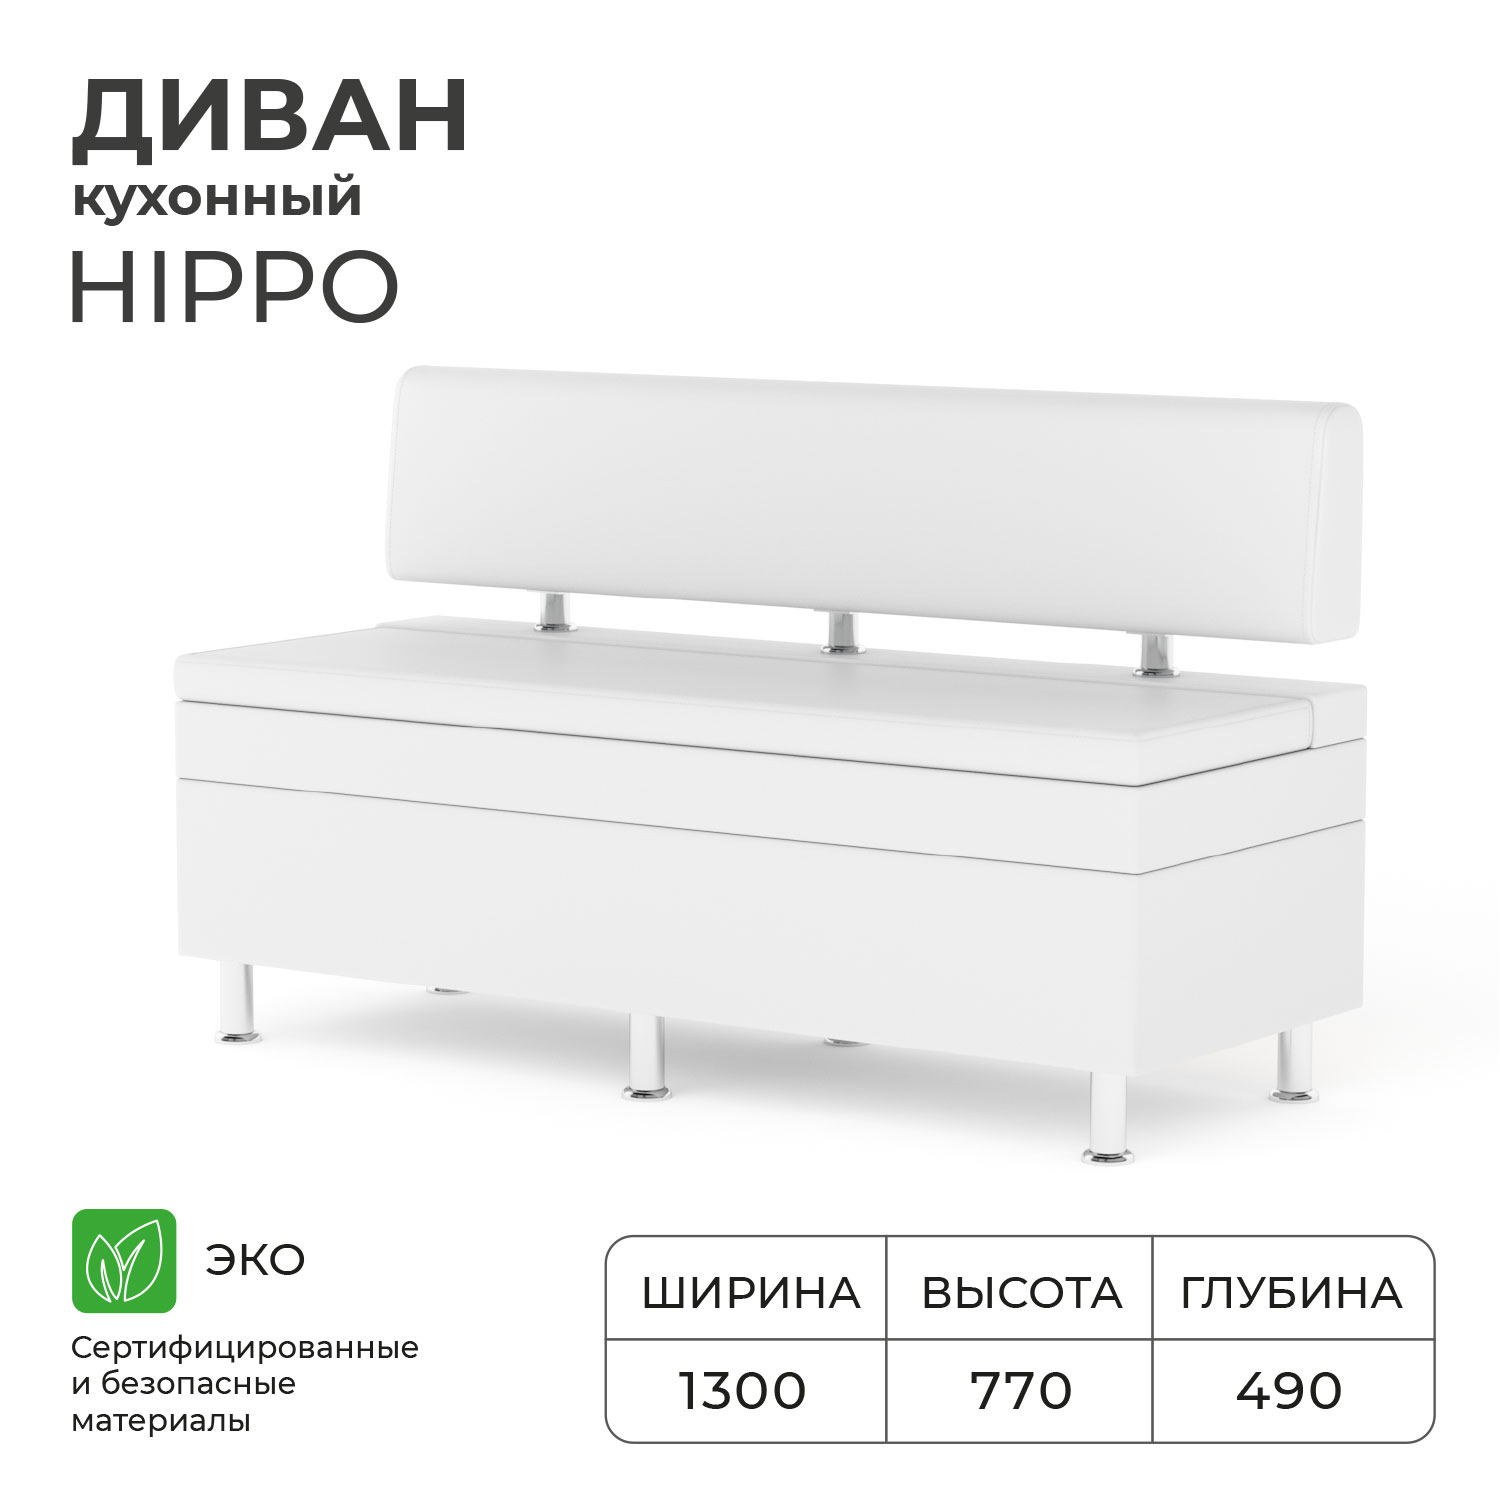 Диван кухонный  Bruno Hippo 1.3 м